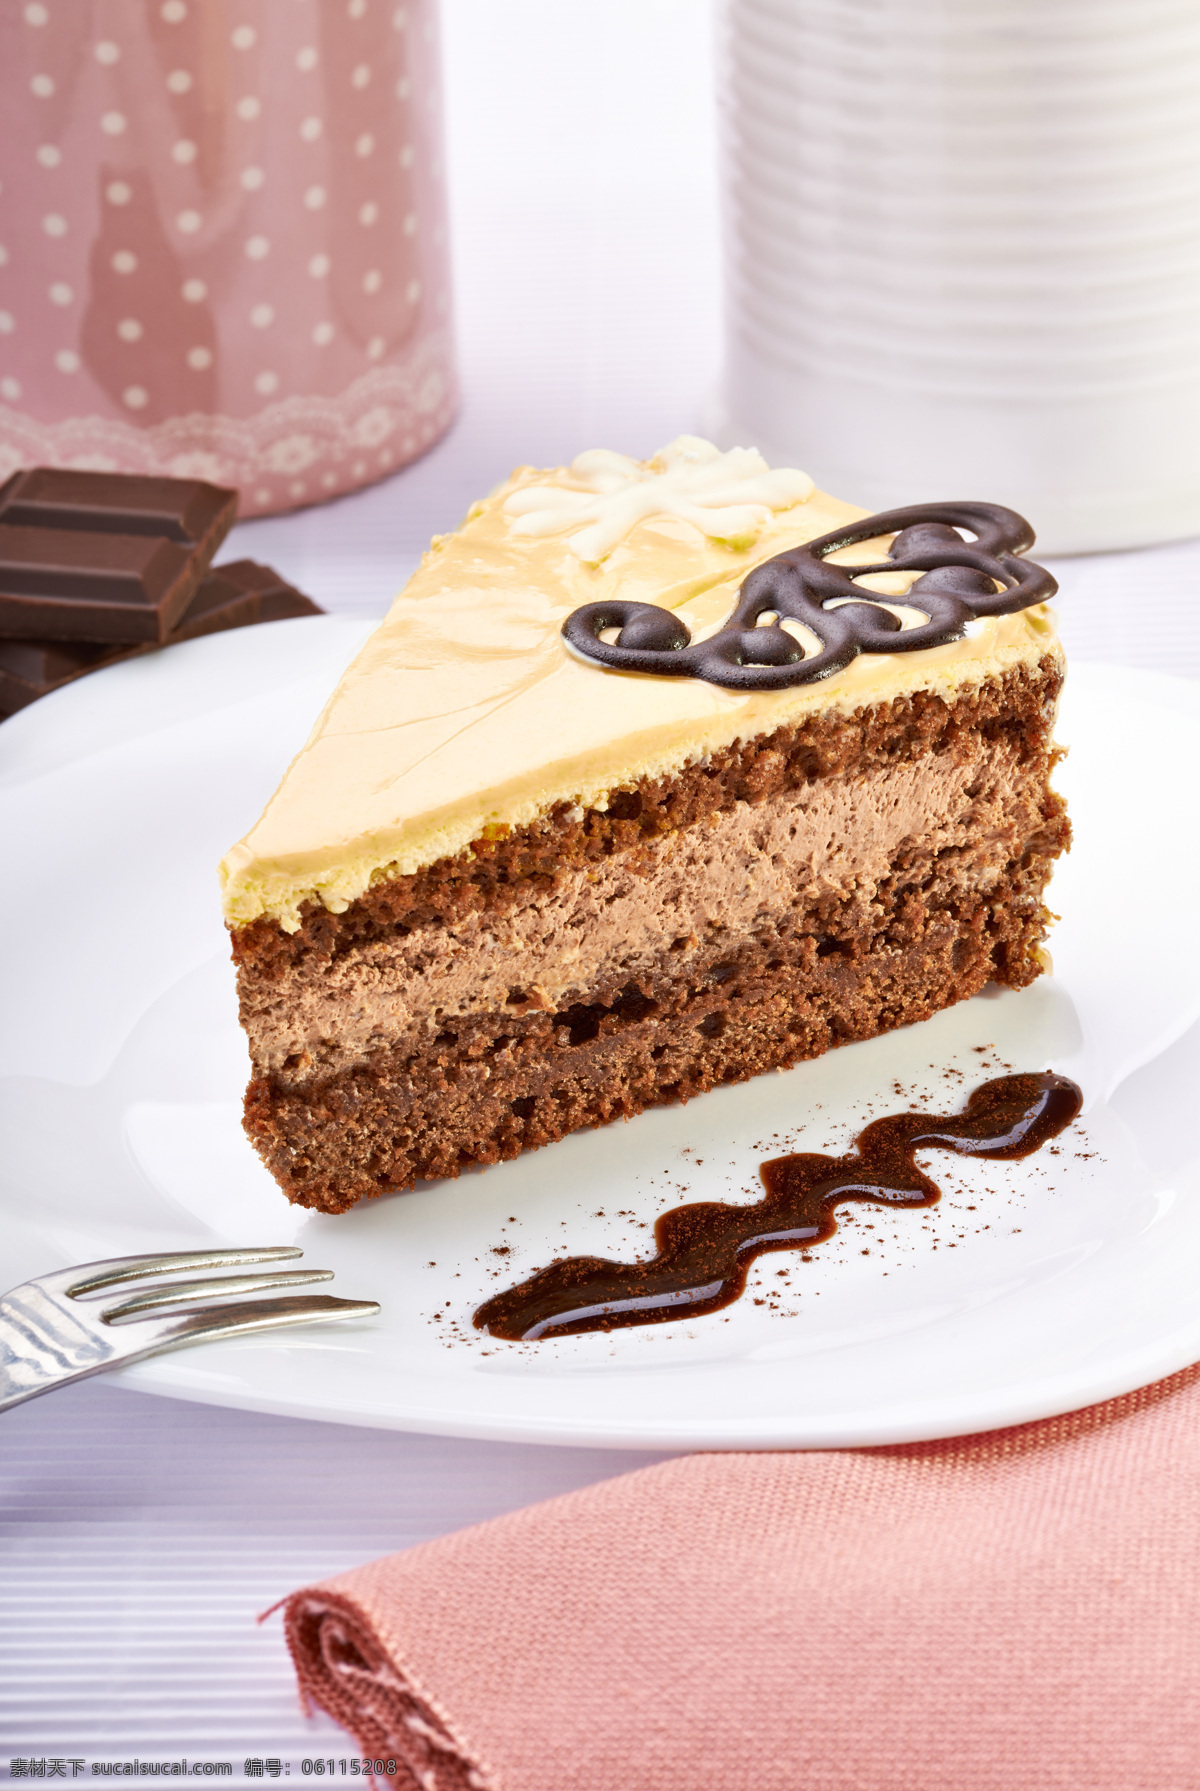 盘子 里面 巧克力 蛋糕 叉子 碟子 餐巾 生日蛋糕图片 餐饮美食